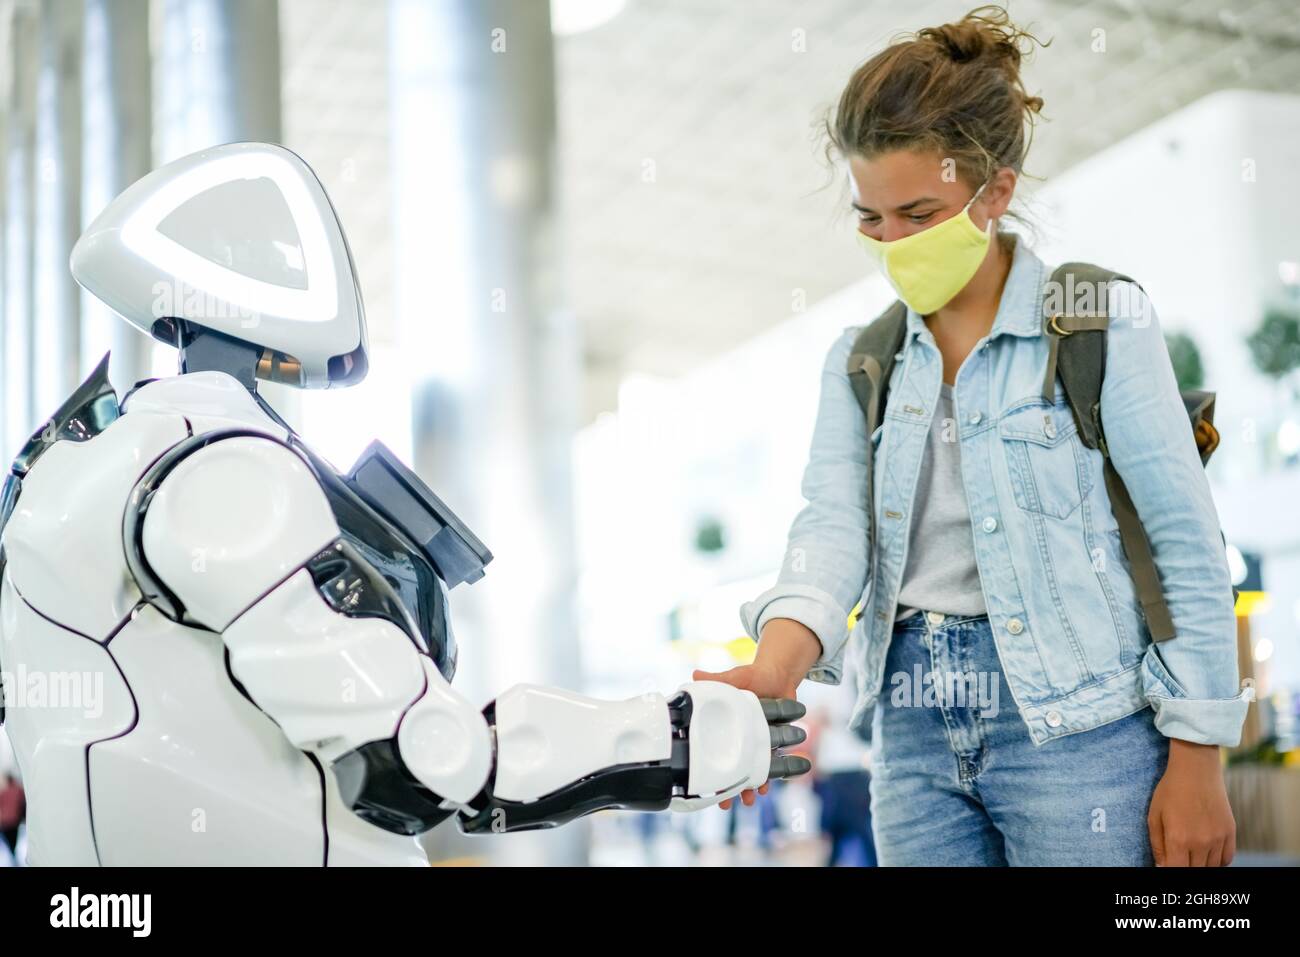 Roboter und menschlicher Handschlag an einem öffentlichen Ort, modernes zukünftiges technologisches Konzept. Intelligenter Roboterassistent mit KI und hübscher Frau in gelber Gesichtsmaske Stockfoto